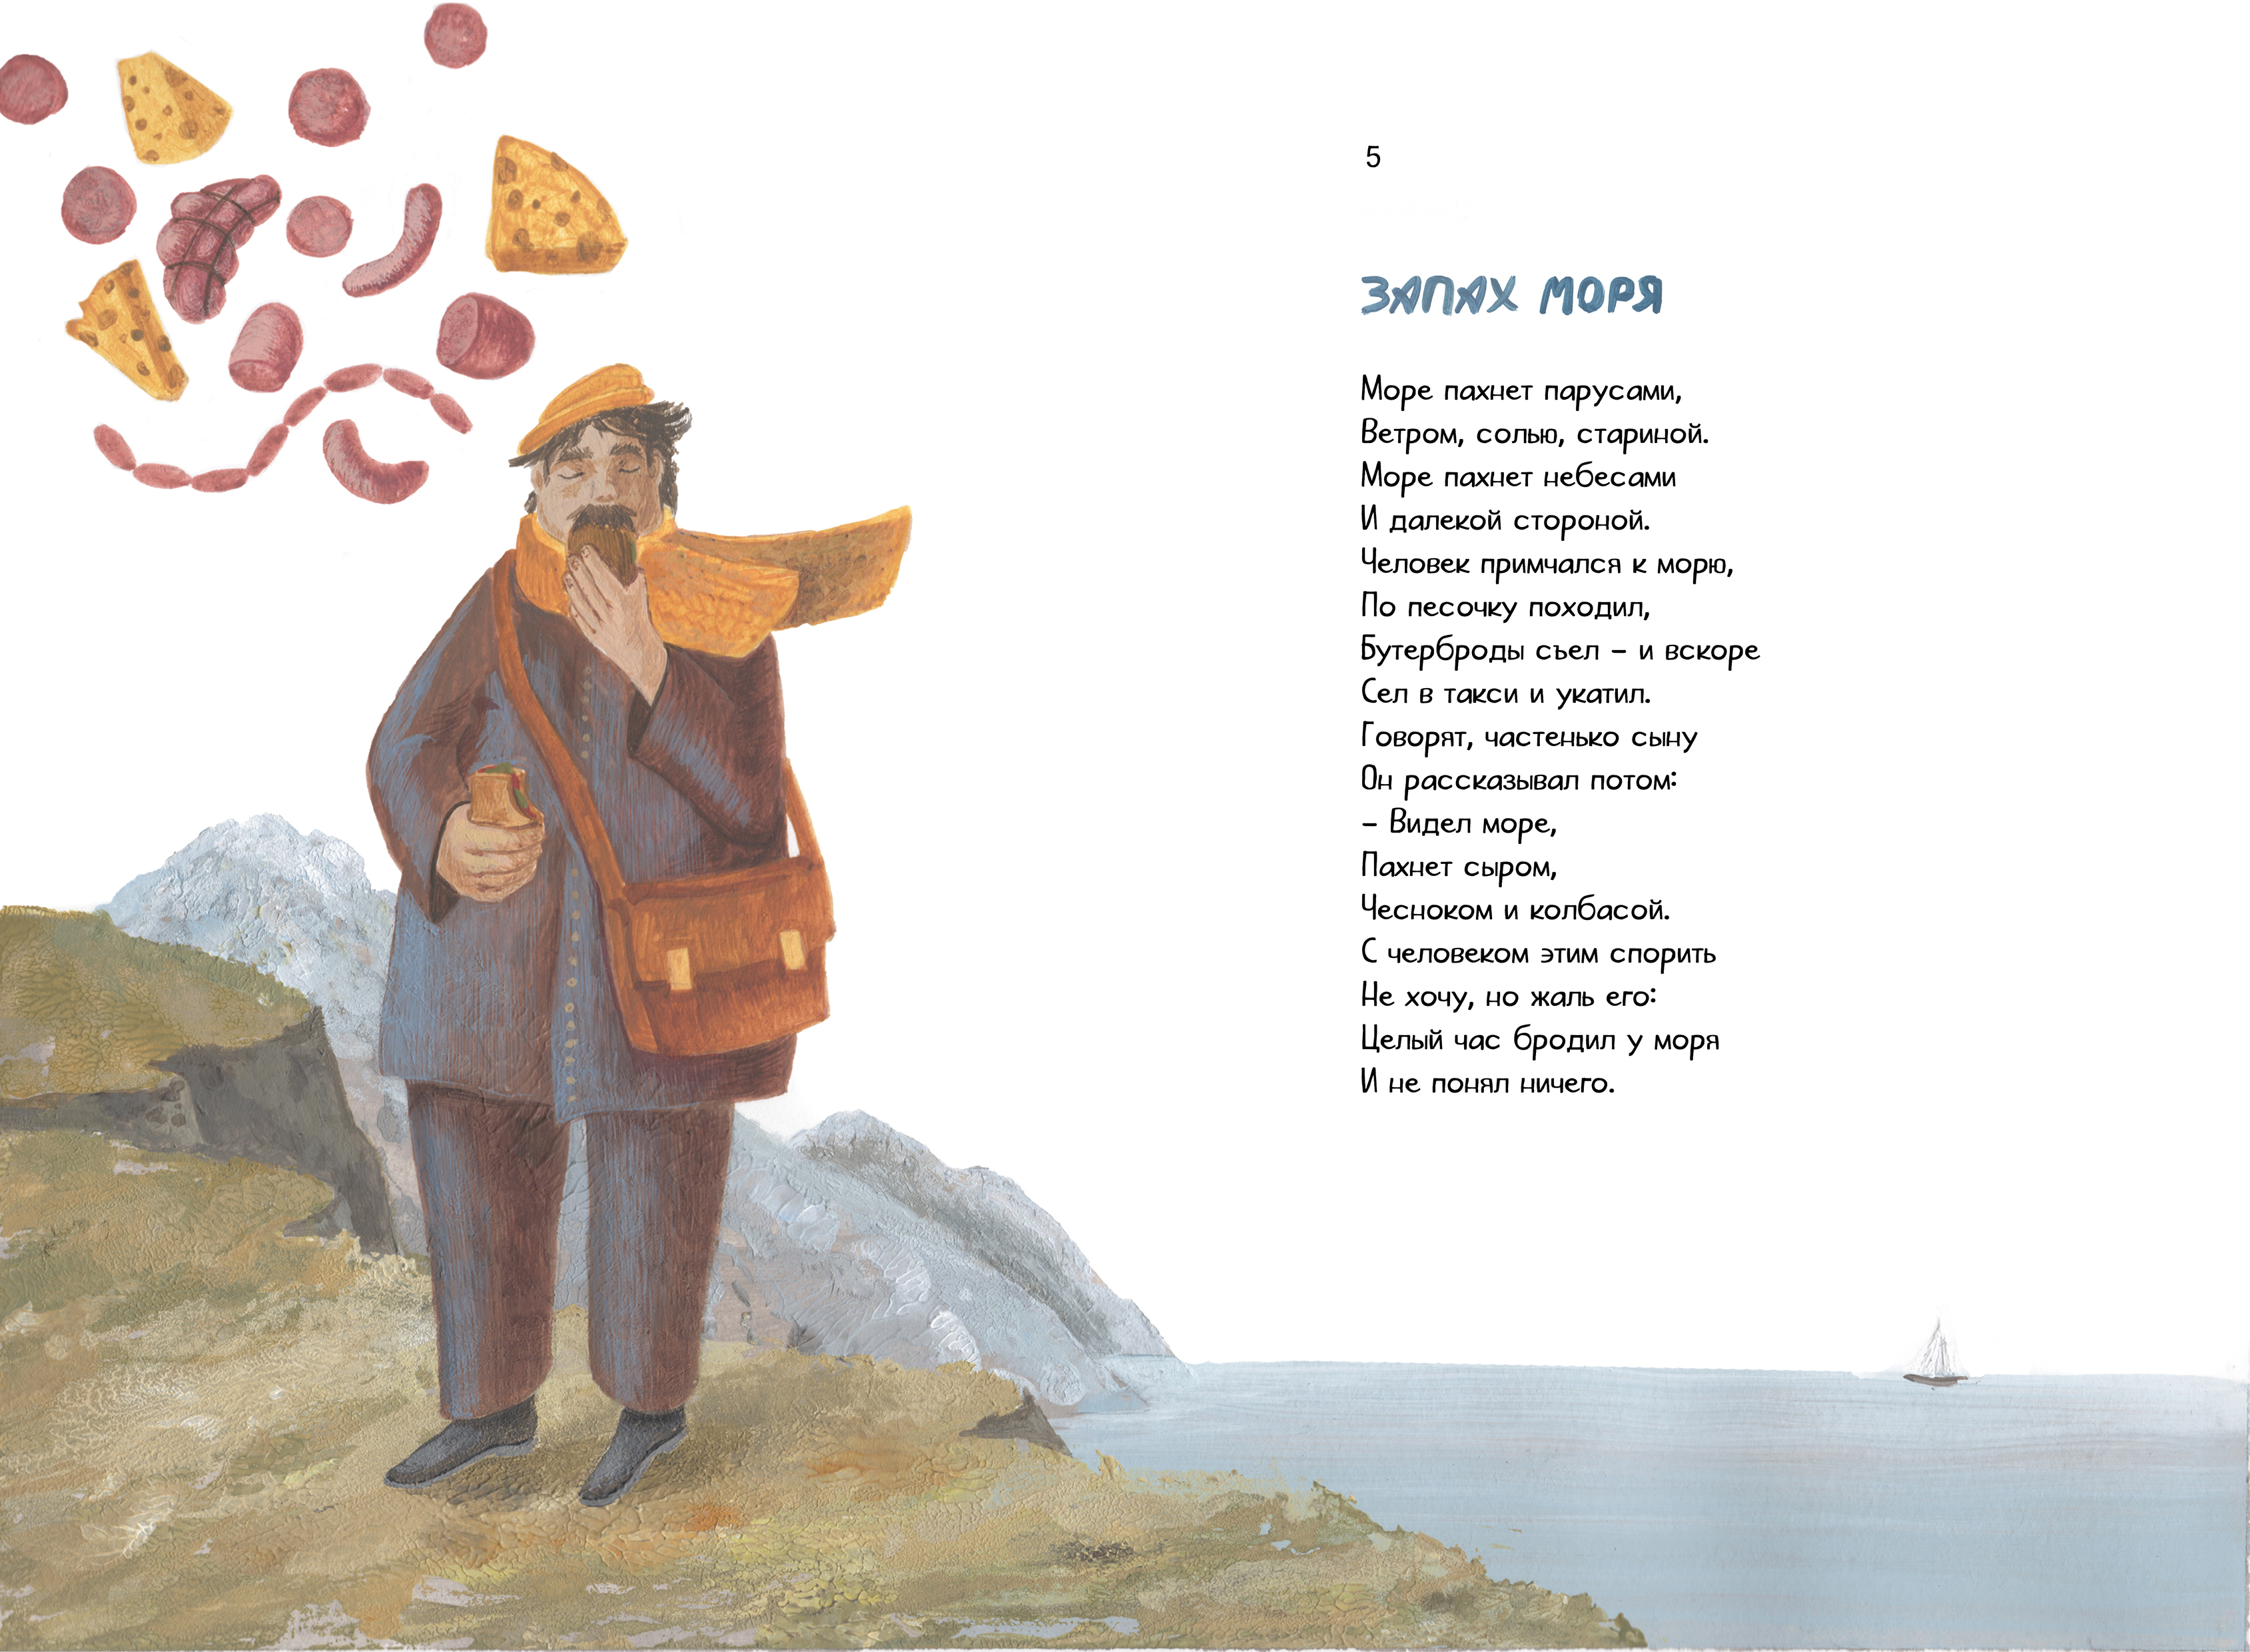 иллюстрация к стихотворению Валерия Шульжика "Запах моря"